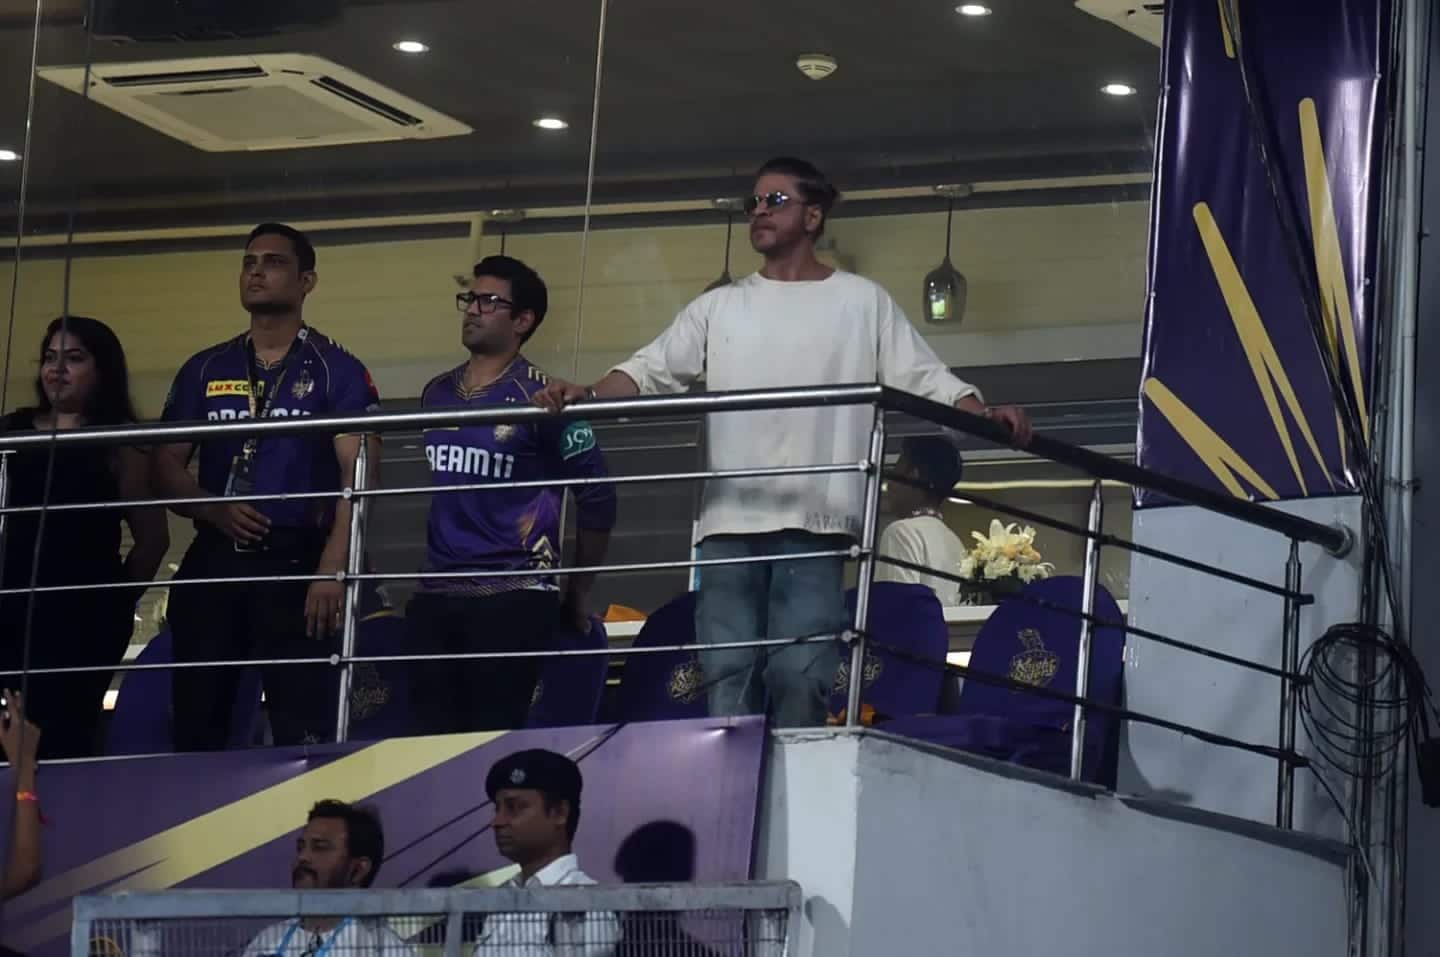 SRK at pavilion watching KKR SRH game (X.com)